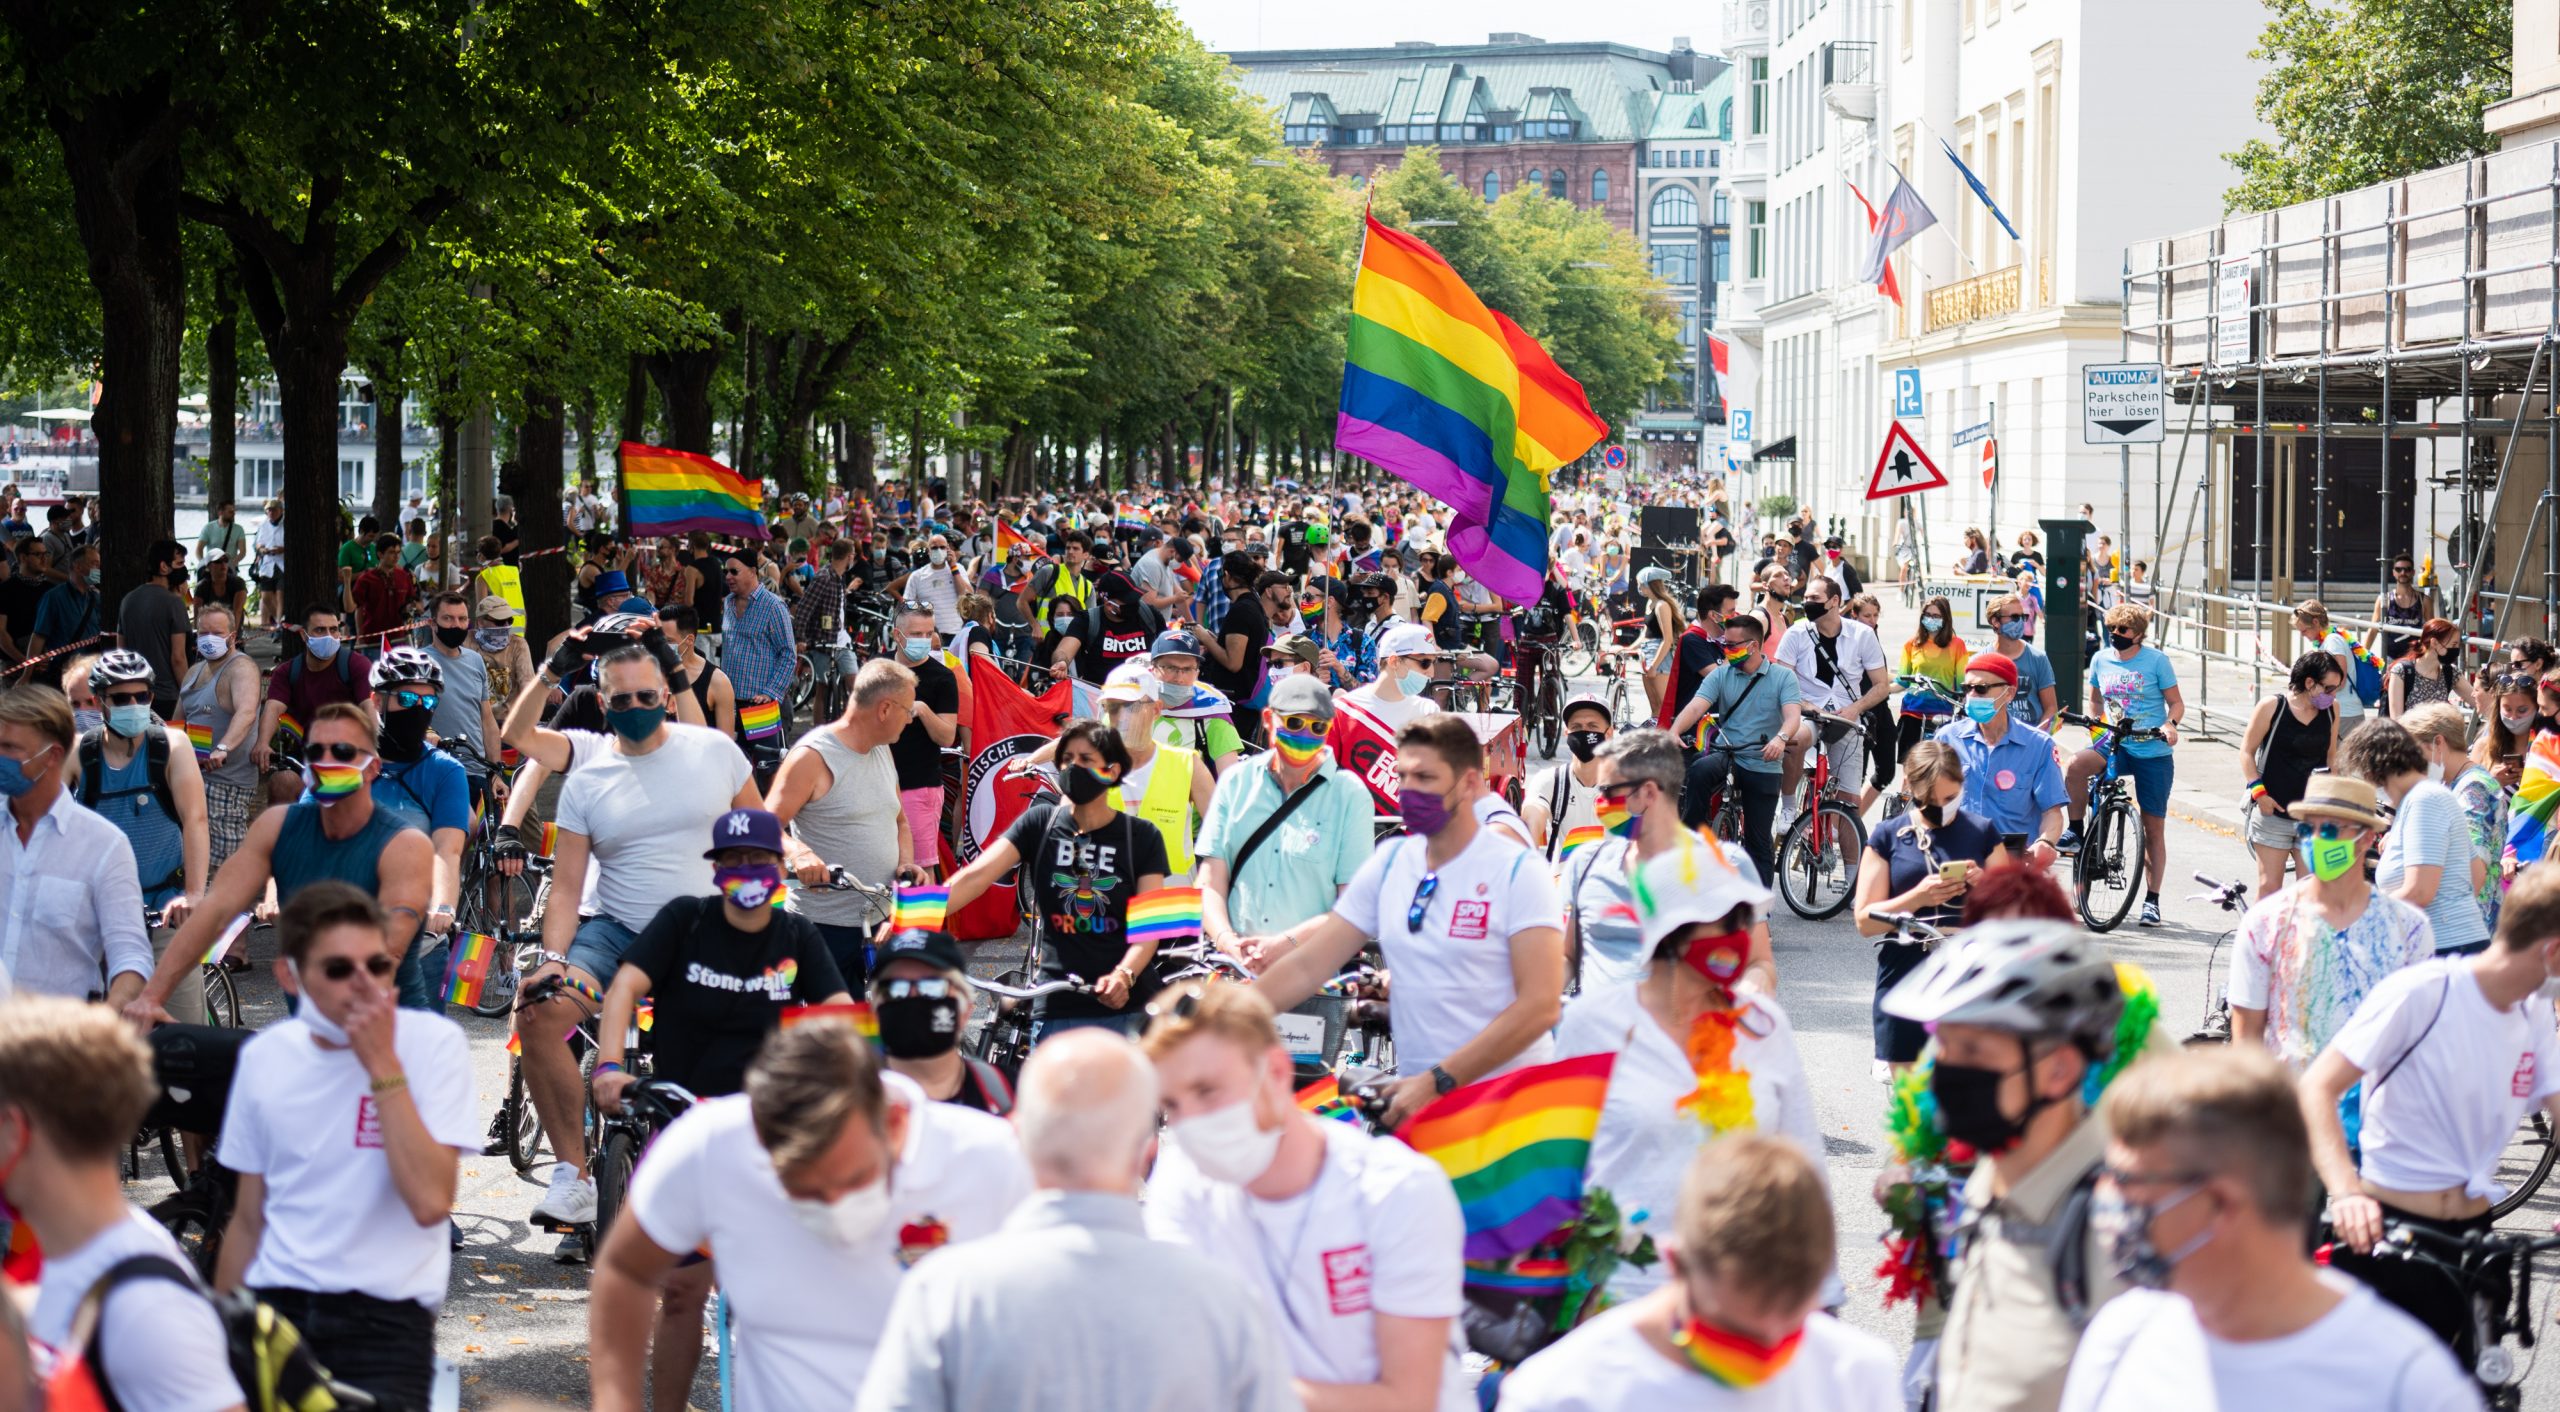 Mehr als 10.000 Teilnehmer werden auf der diesjährigen CSD-Fahrraddemo von Pride Hamburg erwartet.